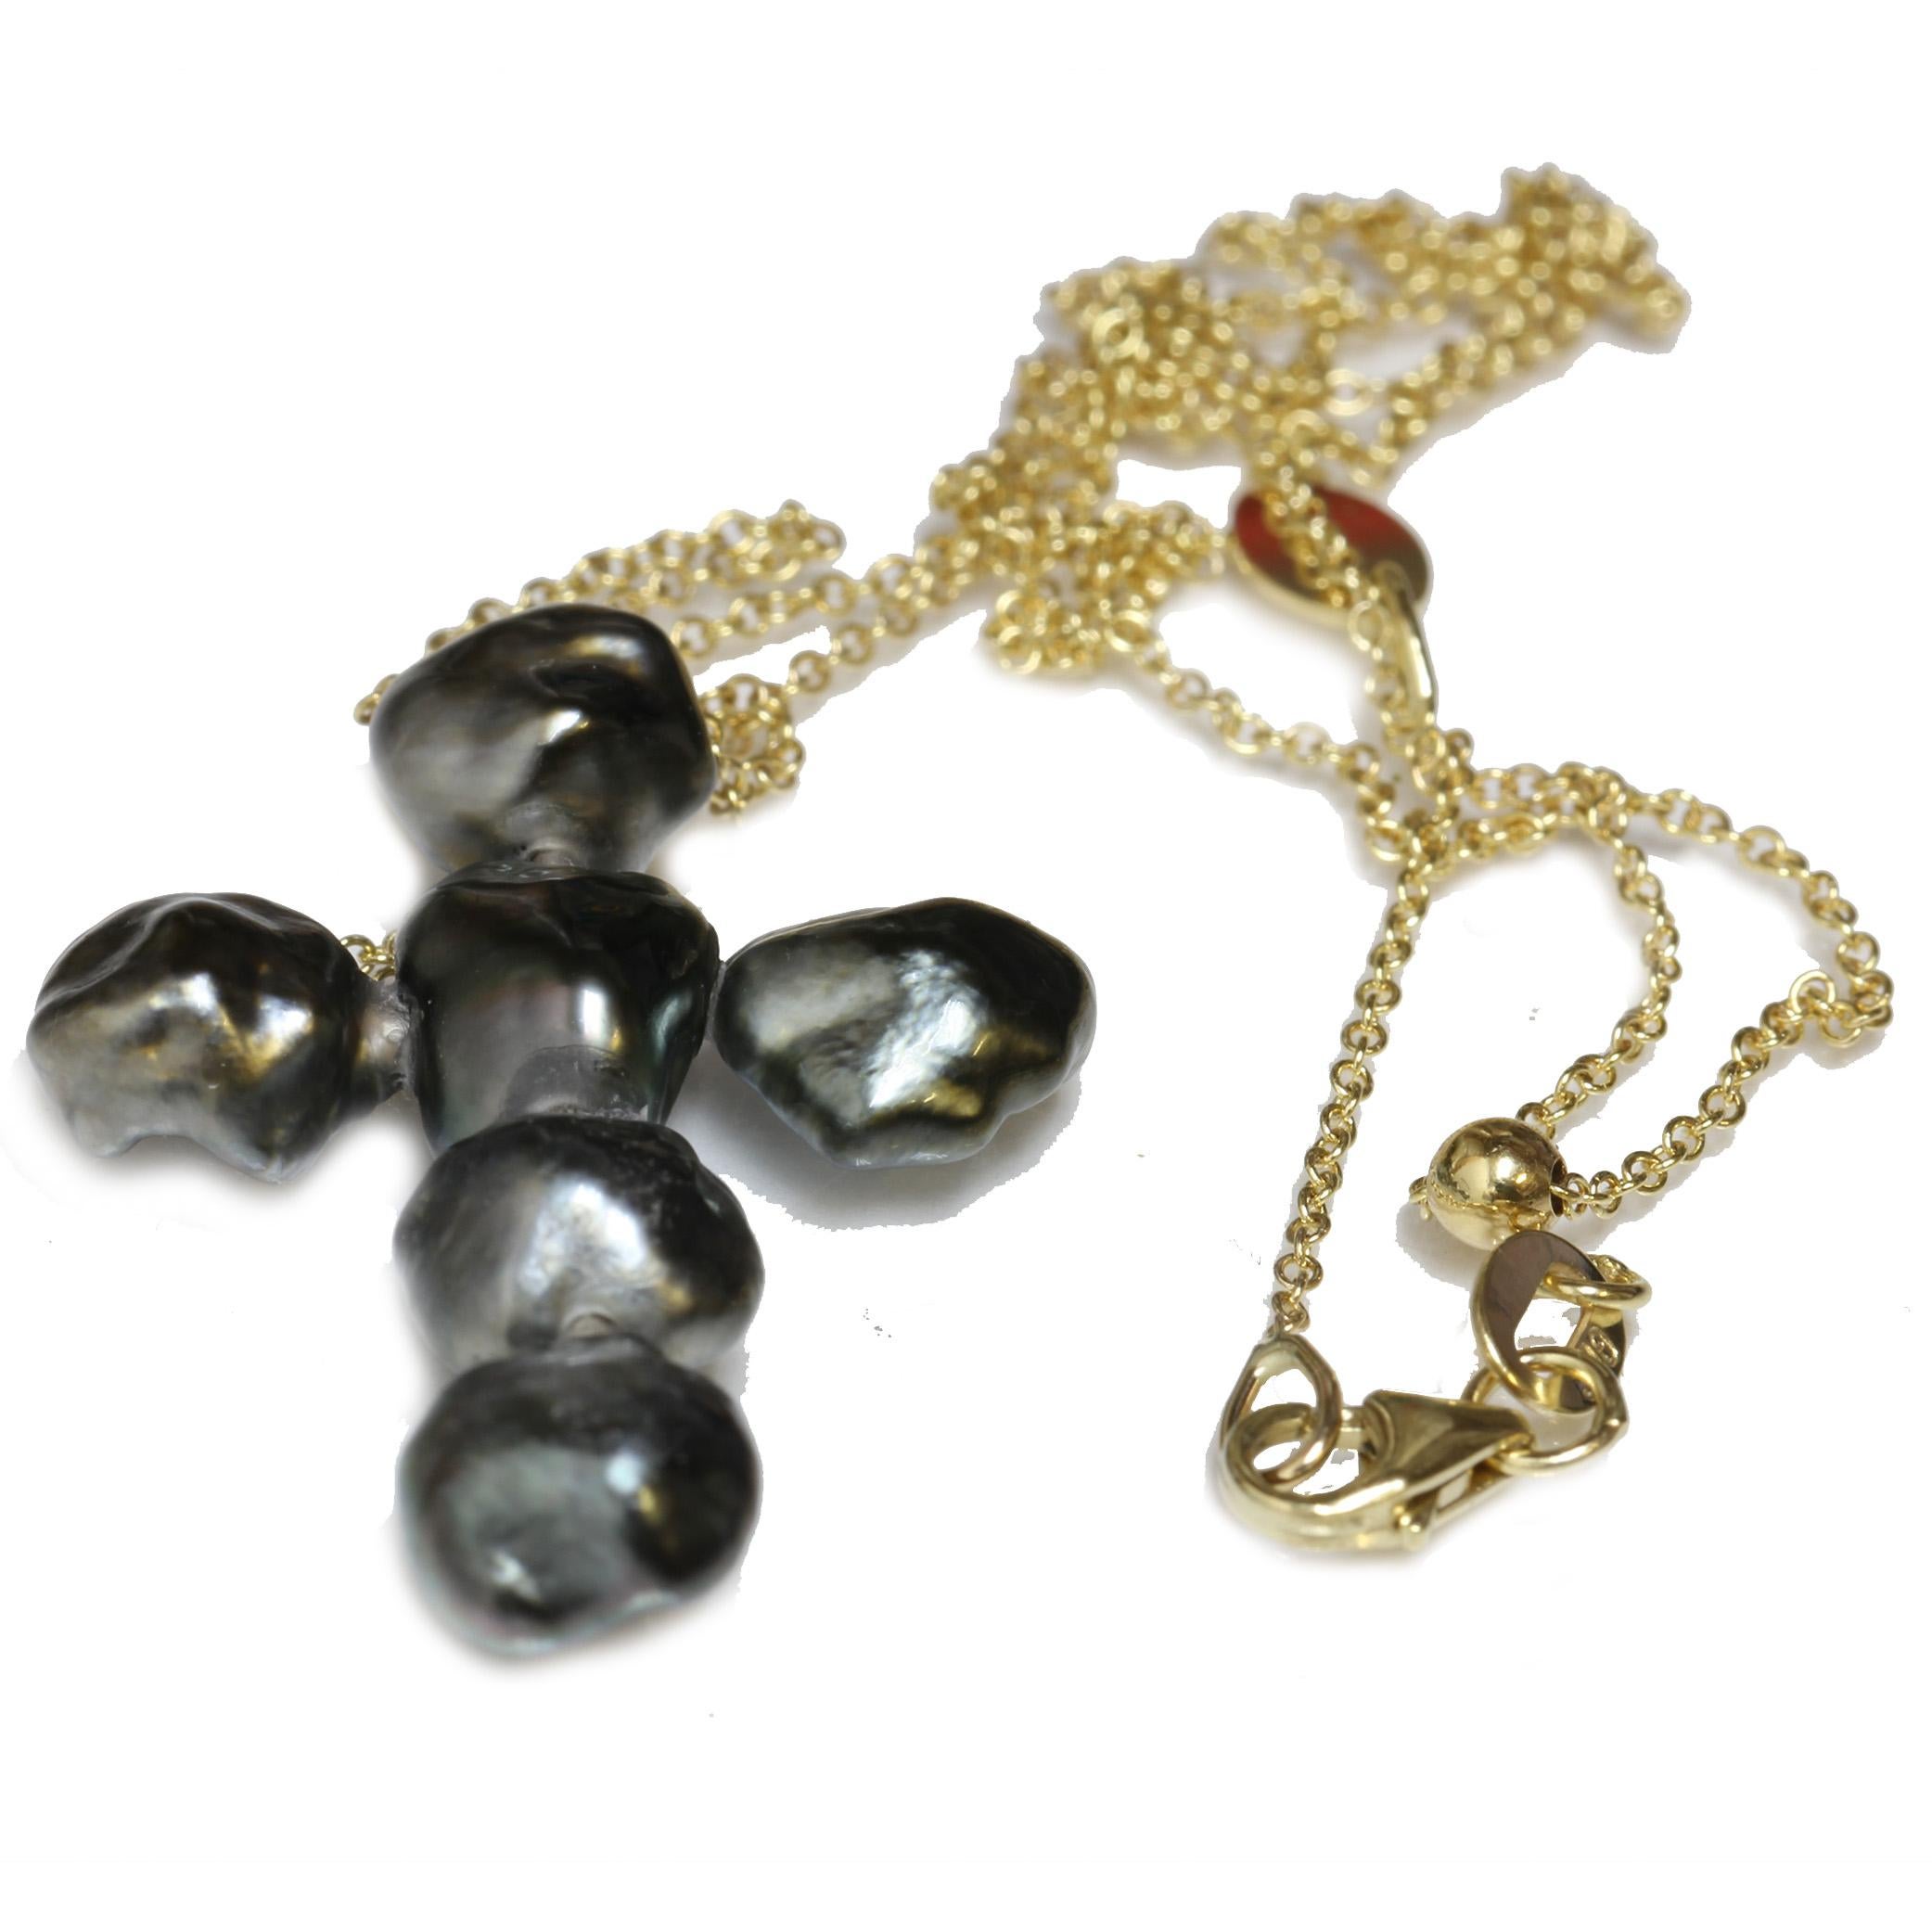 7.0 - 8.0mm  Tahiti-Keshi-Perle Diamant-Kreuz-Halskette in 14kt Gelbgold rolo italienischen verstellbaren Kette gesetzt. Die Perlen haben eine atemberaubende schwarze Farbe und eine einzigartige barocke Form. Die Kette kann einfach durch Verschieben